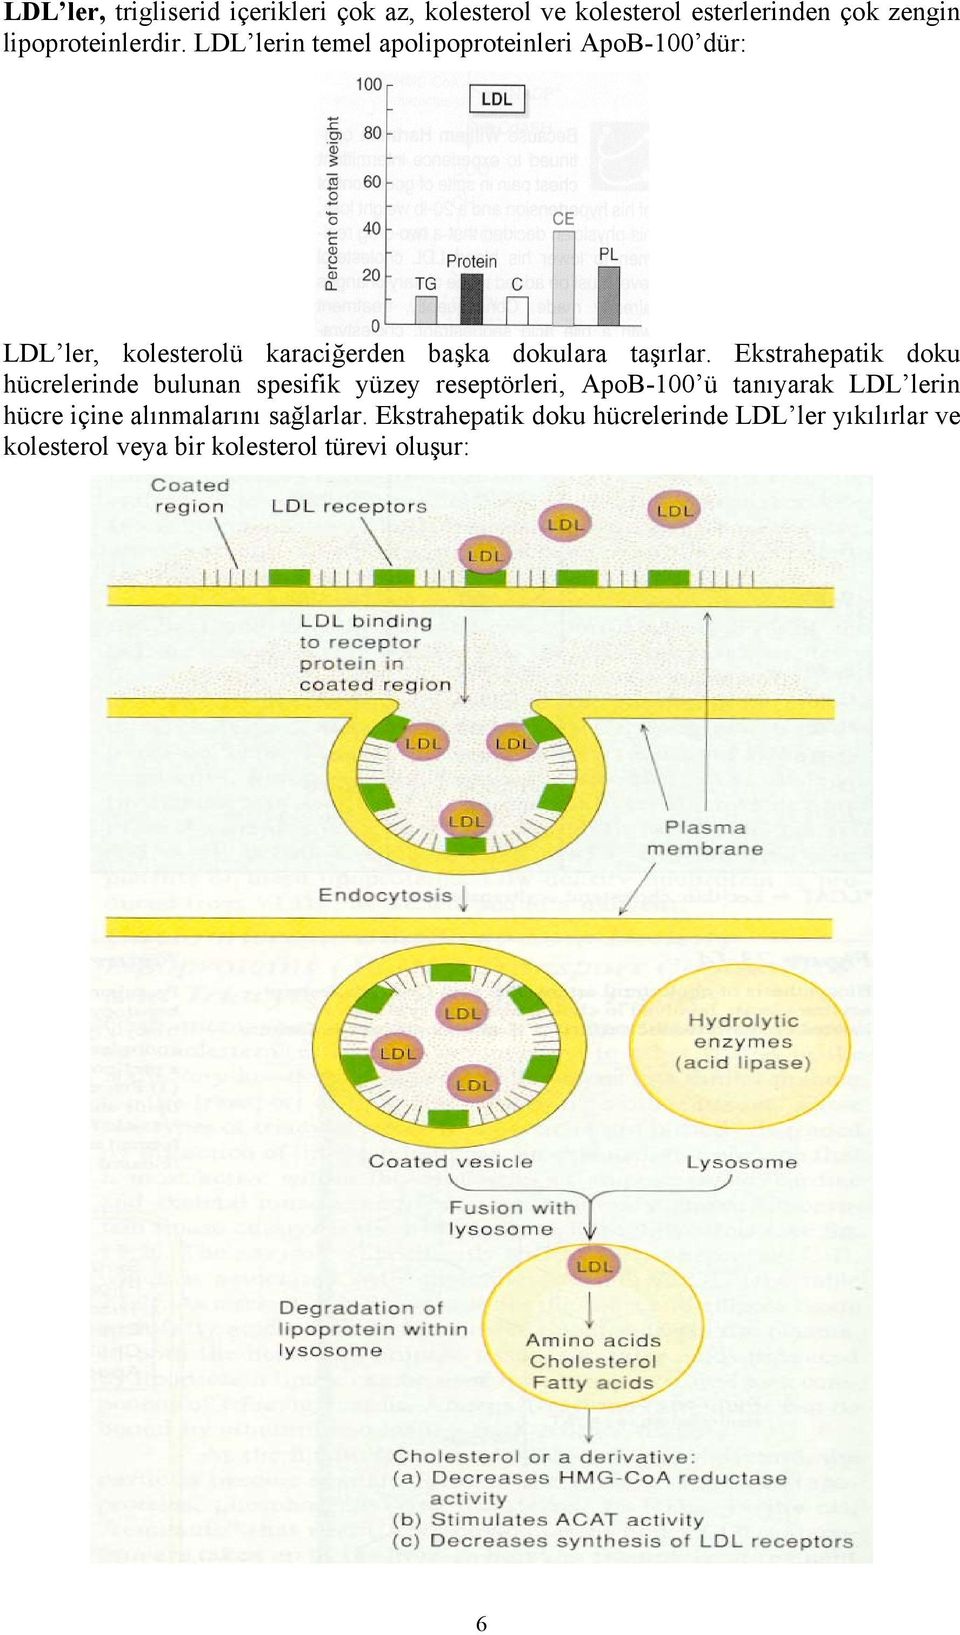 Ekstrahepatik doku hücrelerinde bulunan spesifik yüzey reseptörleri, ApoB-100 ü tanıyarak LDL lerin hücre içine